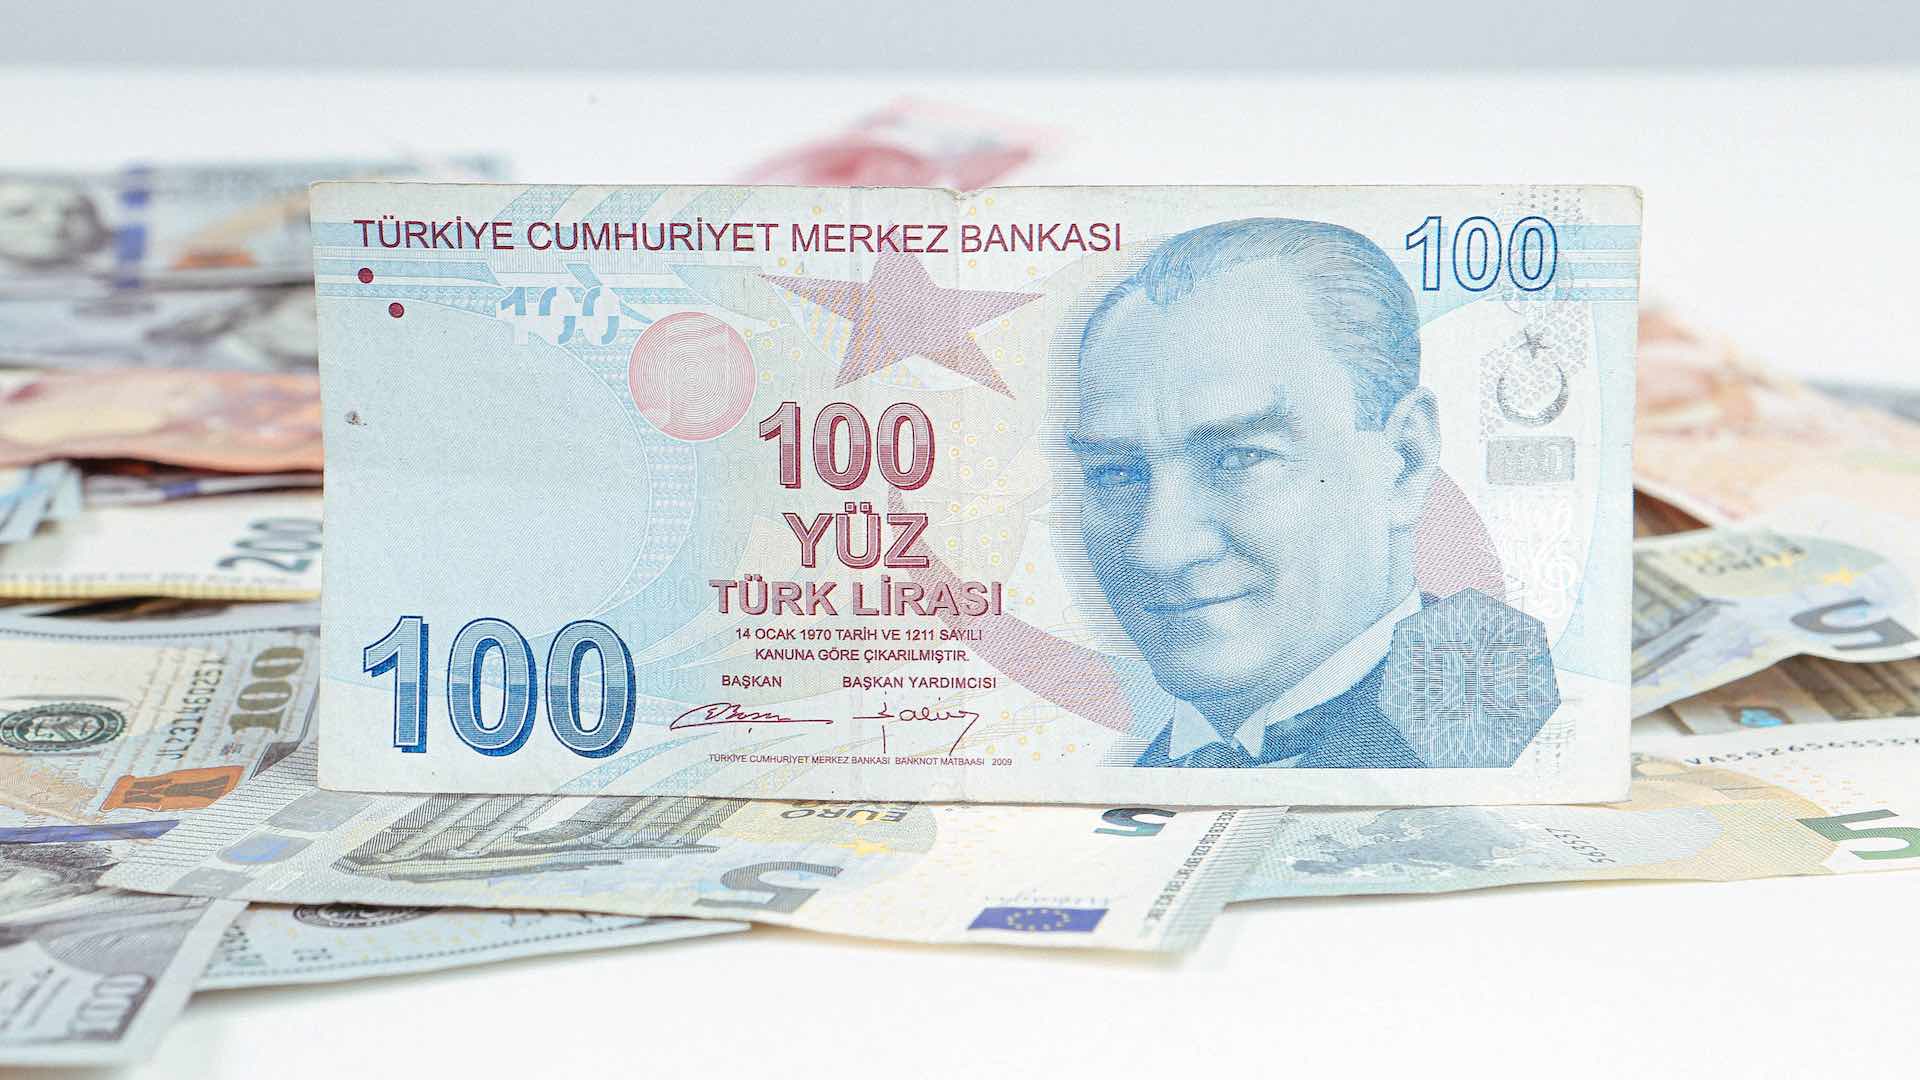 मुद्रास्फीति में वृद्धि के बीच तुर्की लीरा ने अमेरिकी डॉलर के मुकाबले नया निचला स्तर दर्ज किया